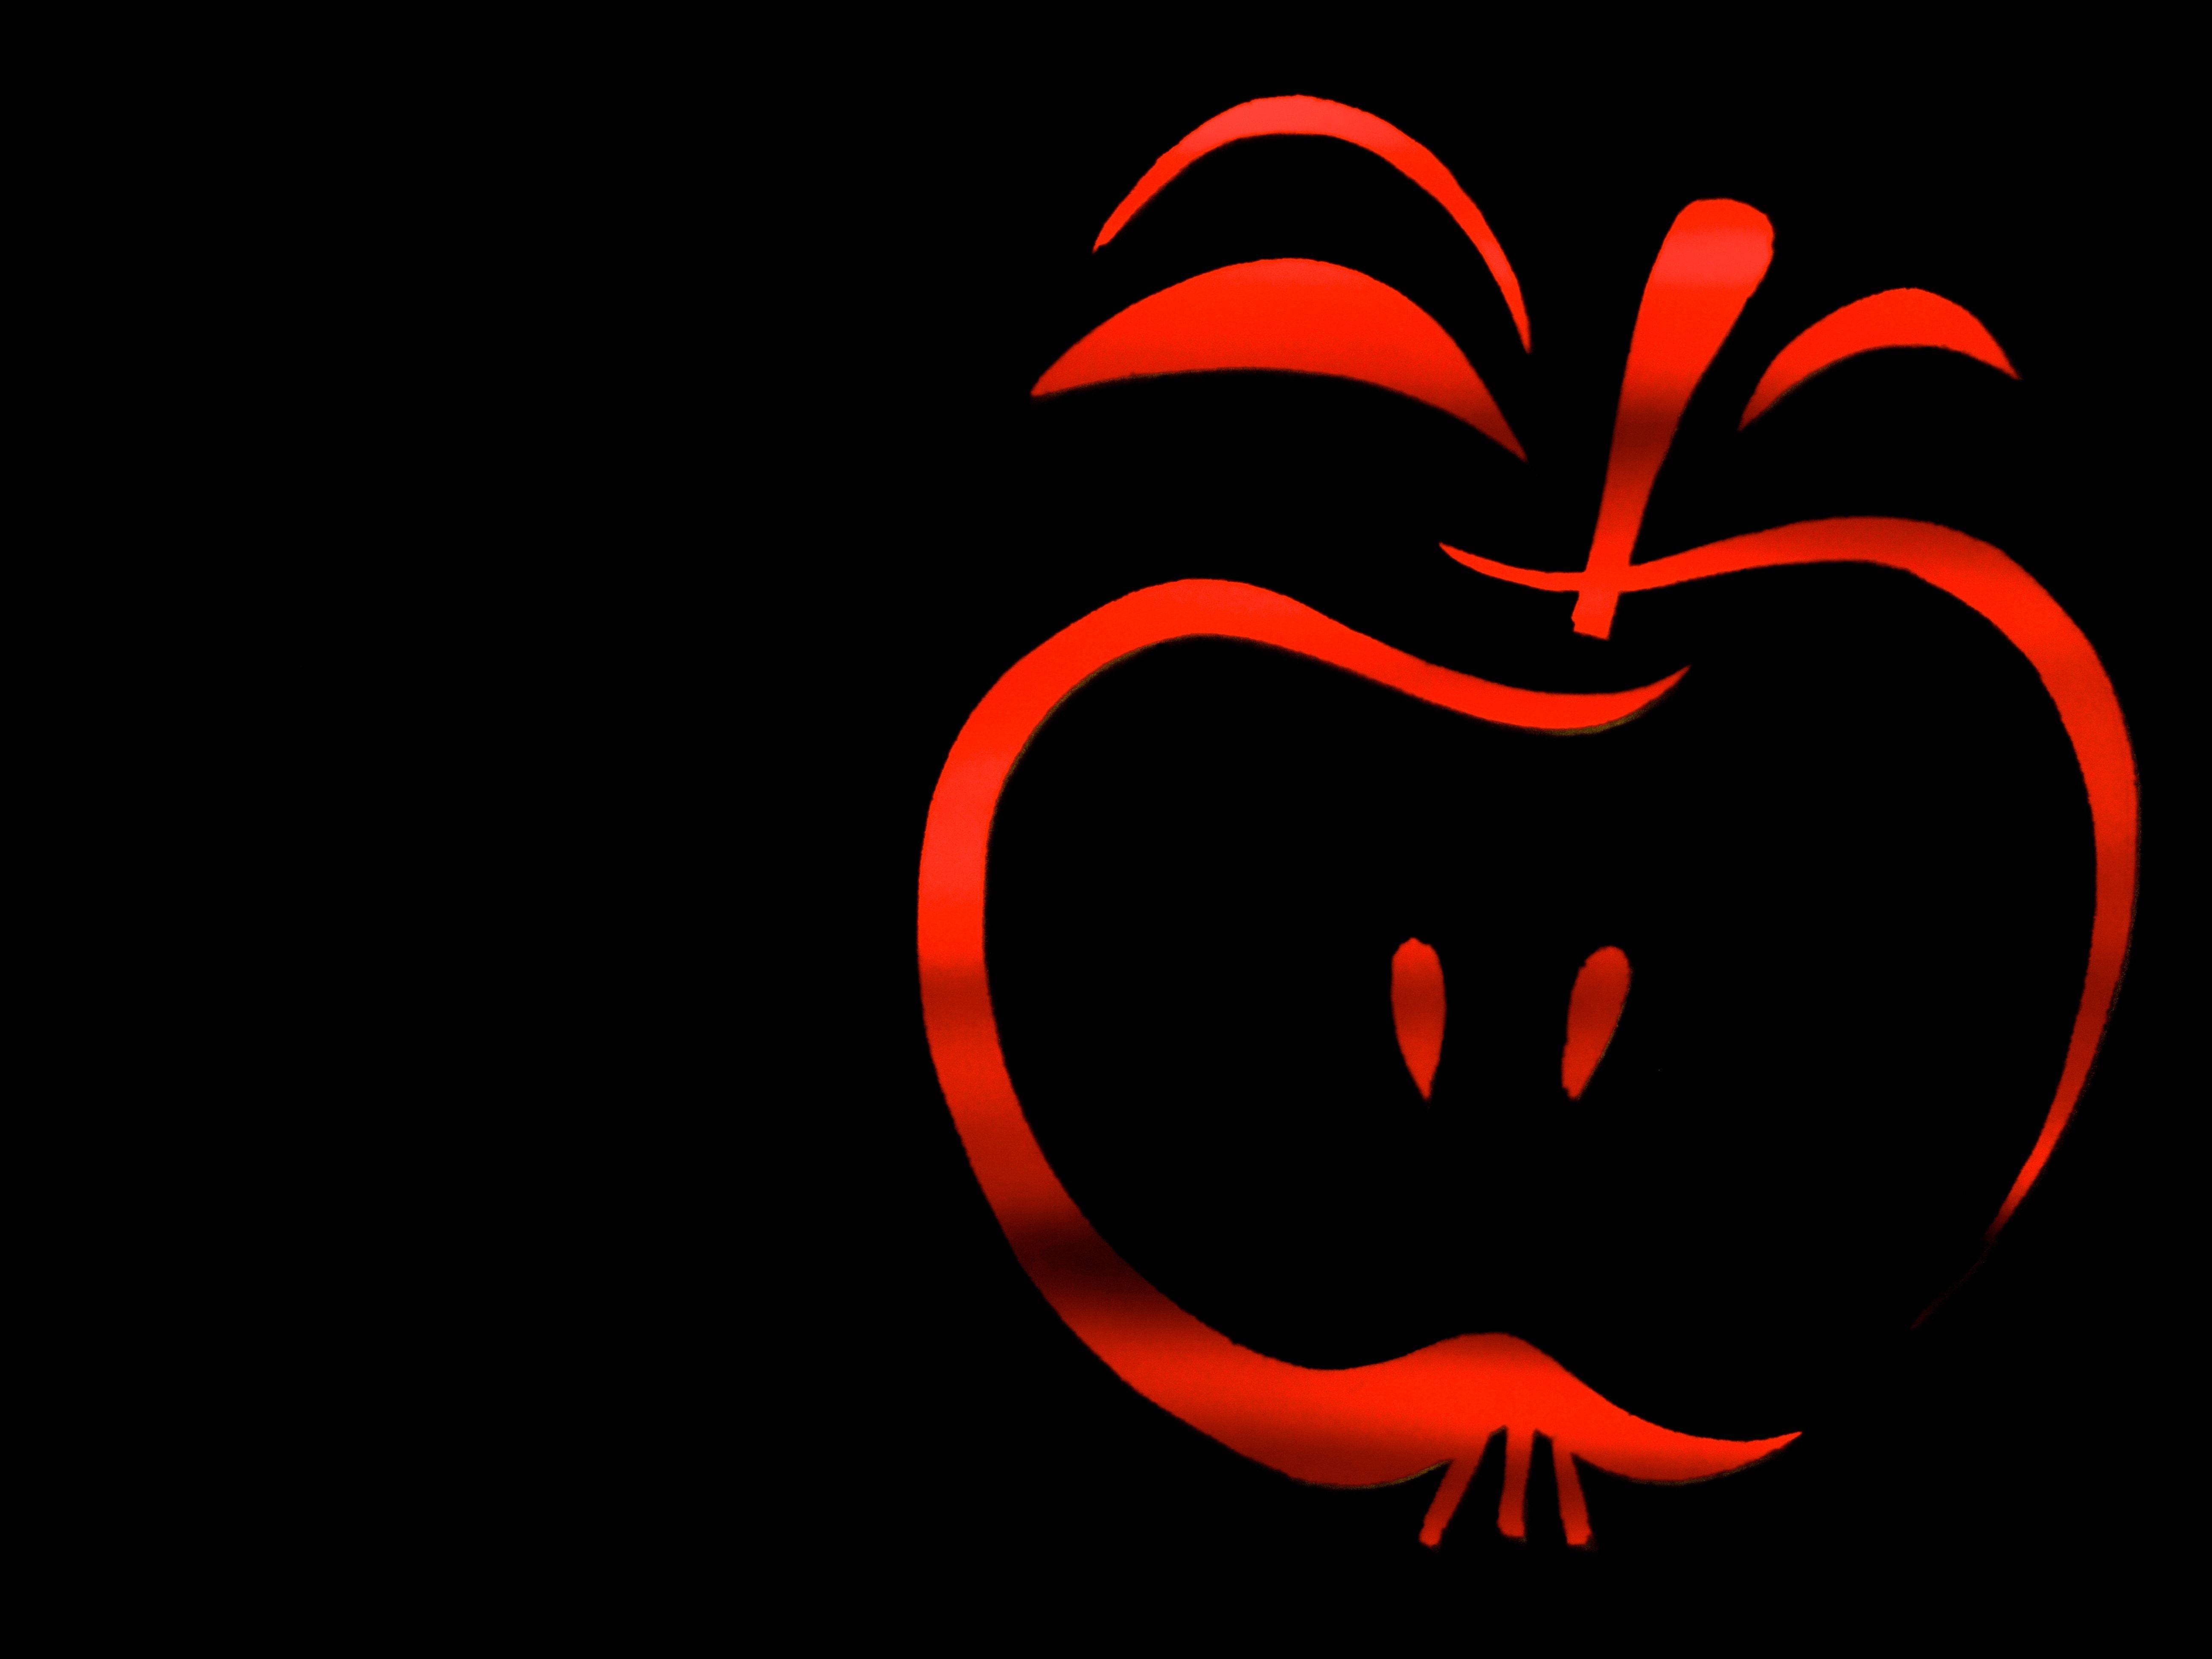 Red Apple Logo - red apple logo free image | Peakpx